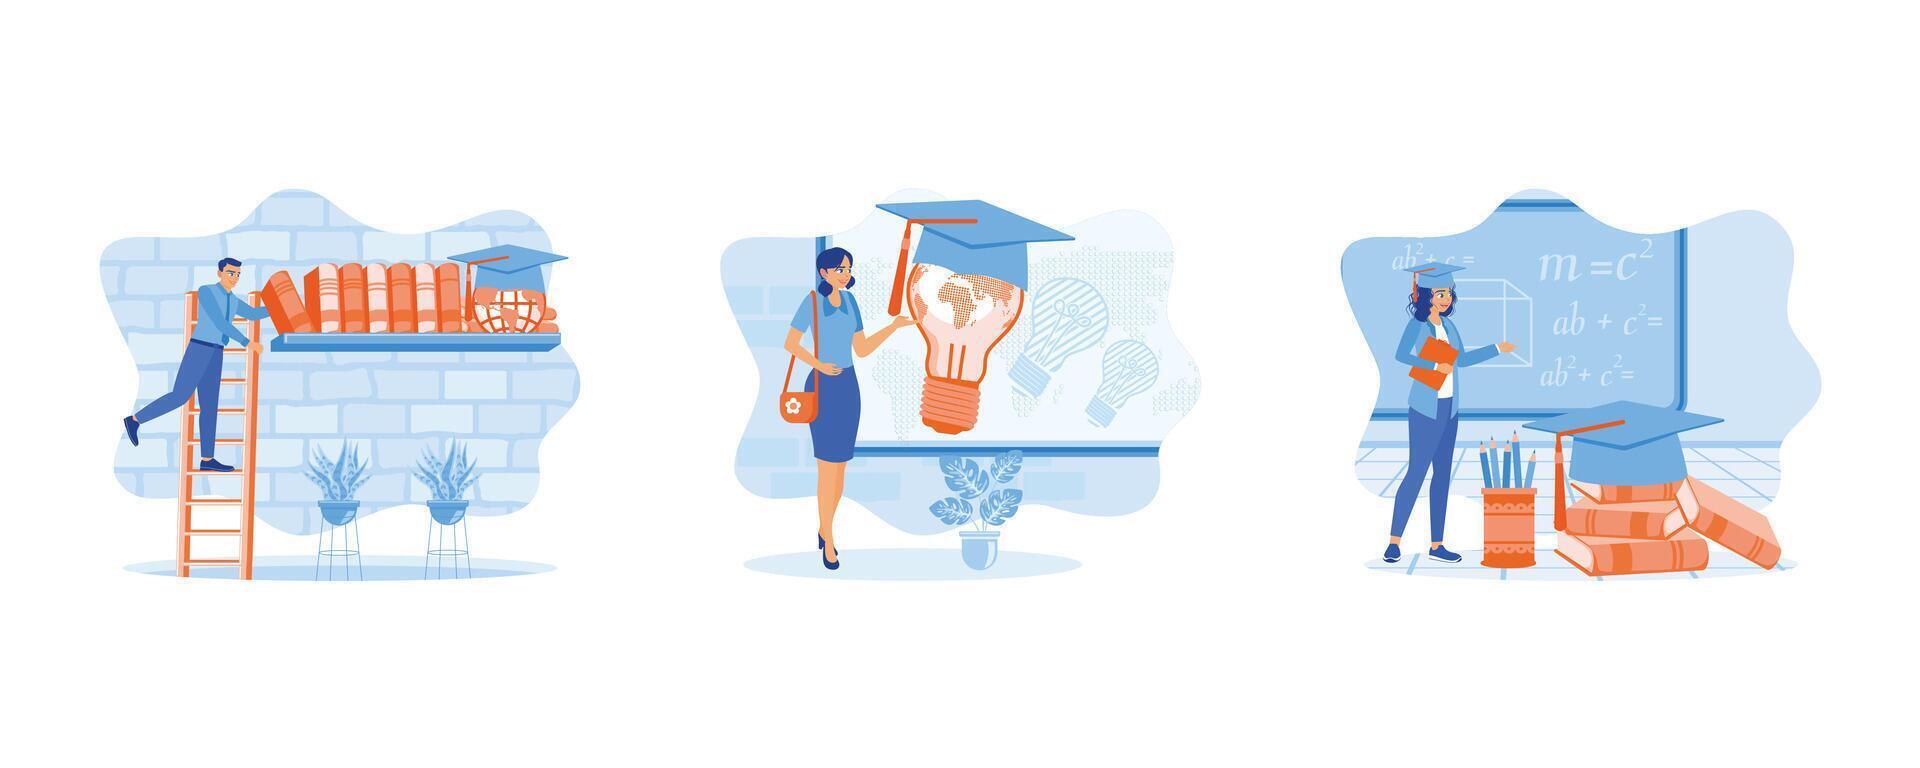 bearbeta till uppnå Framgång. innovation i de värld av utbildning. ung kvinna med dokument och bär en gradering keps. uppsättning platt vektor illustration.